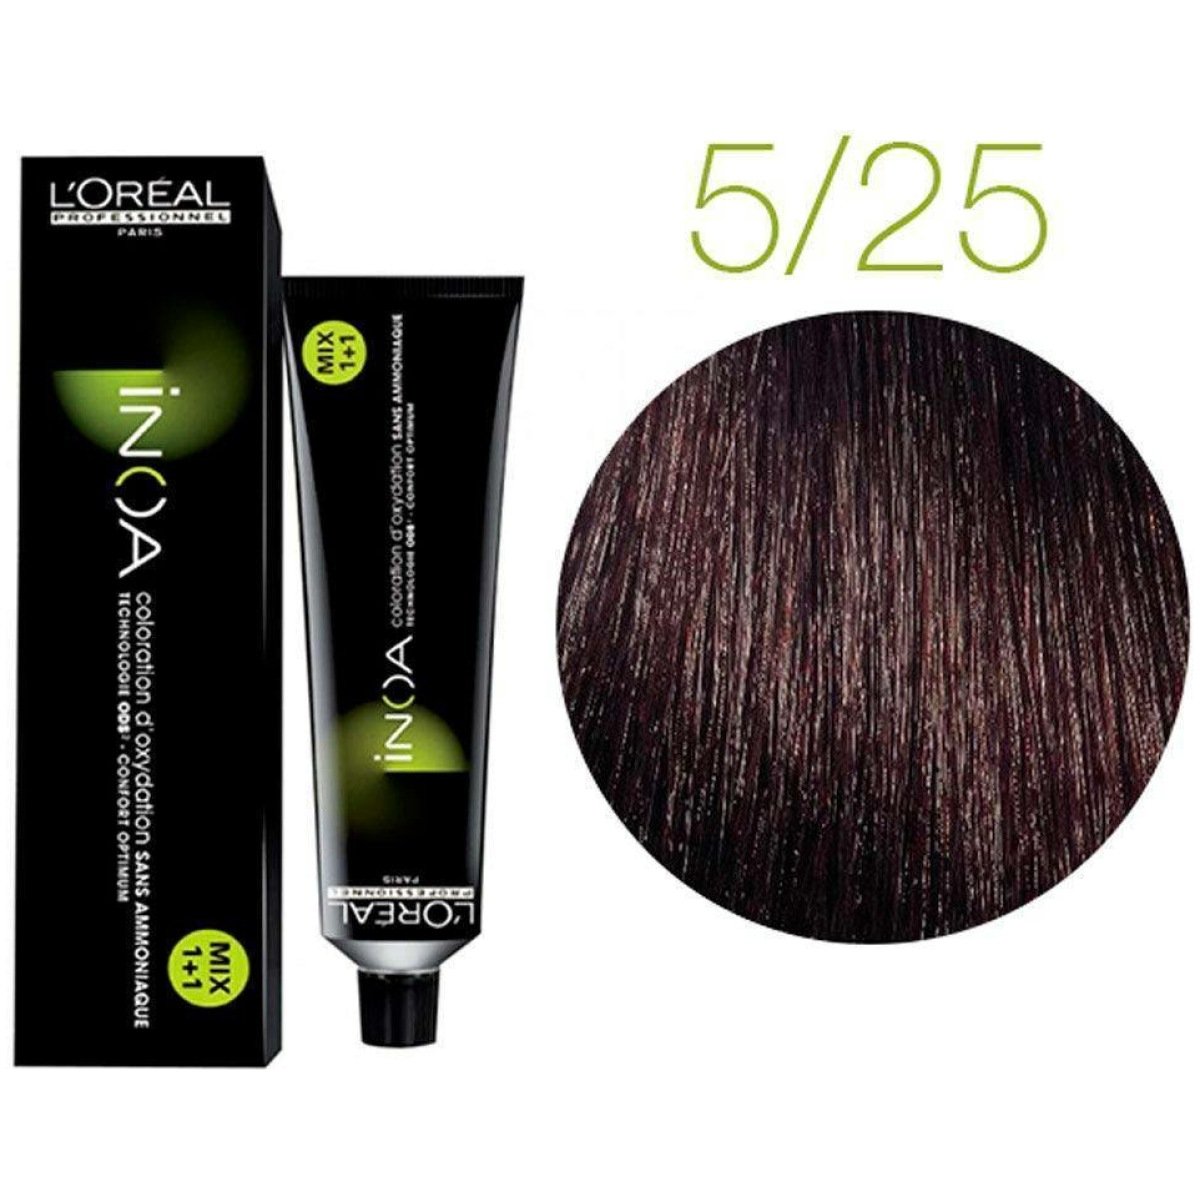 L'Oreal Inoa Ammonia Free Hair Color 60G 5.25 Light Mahogany Brown